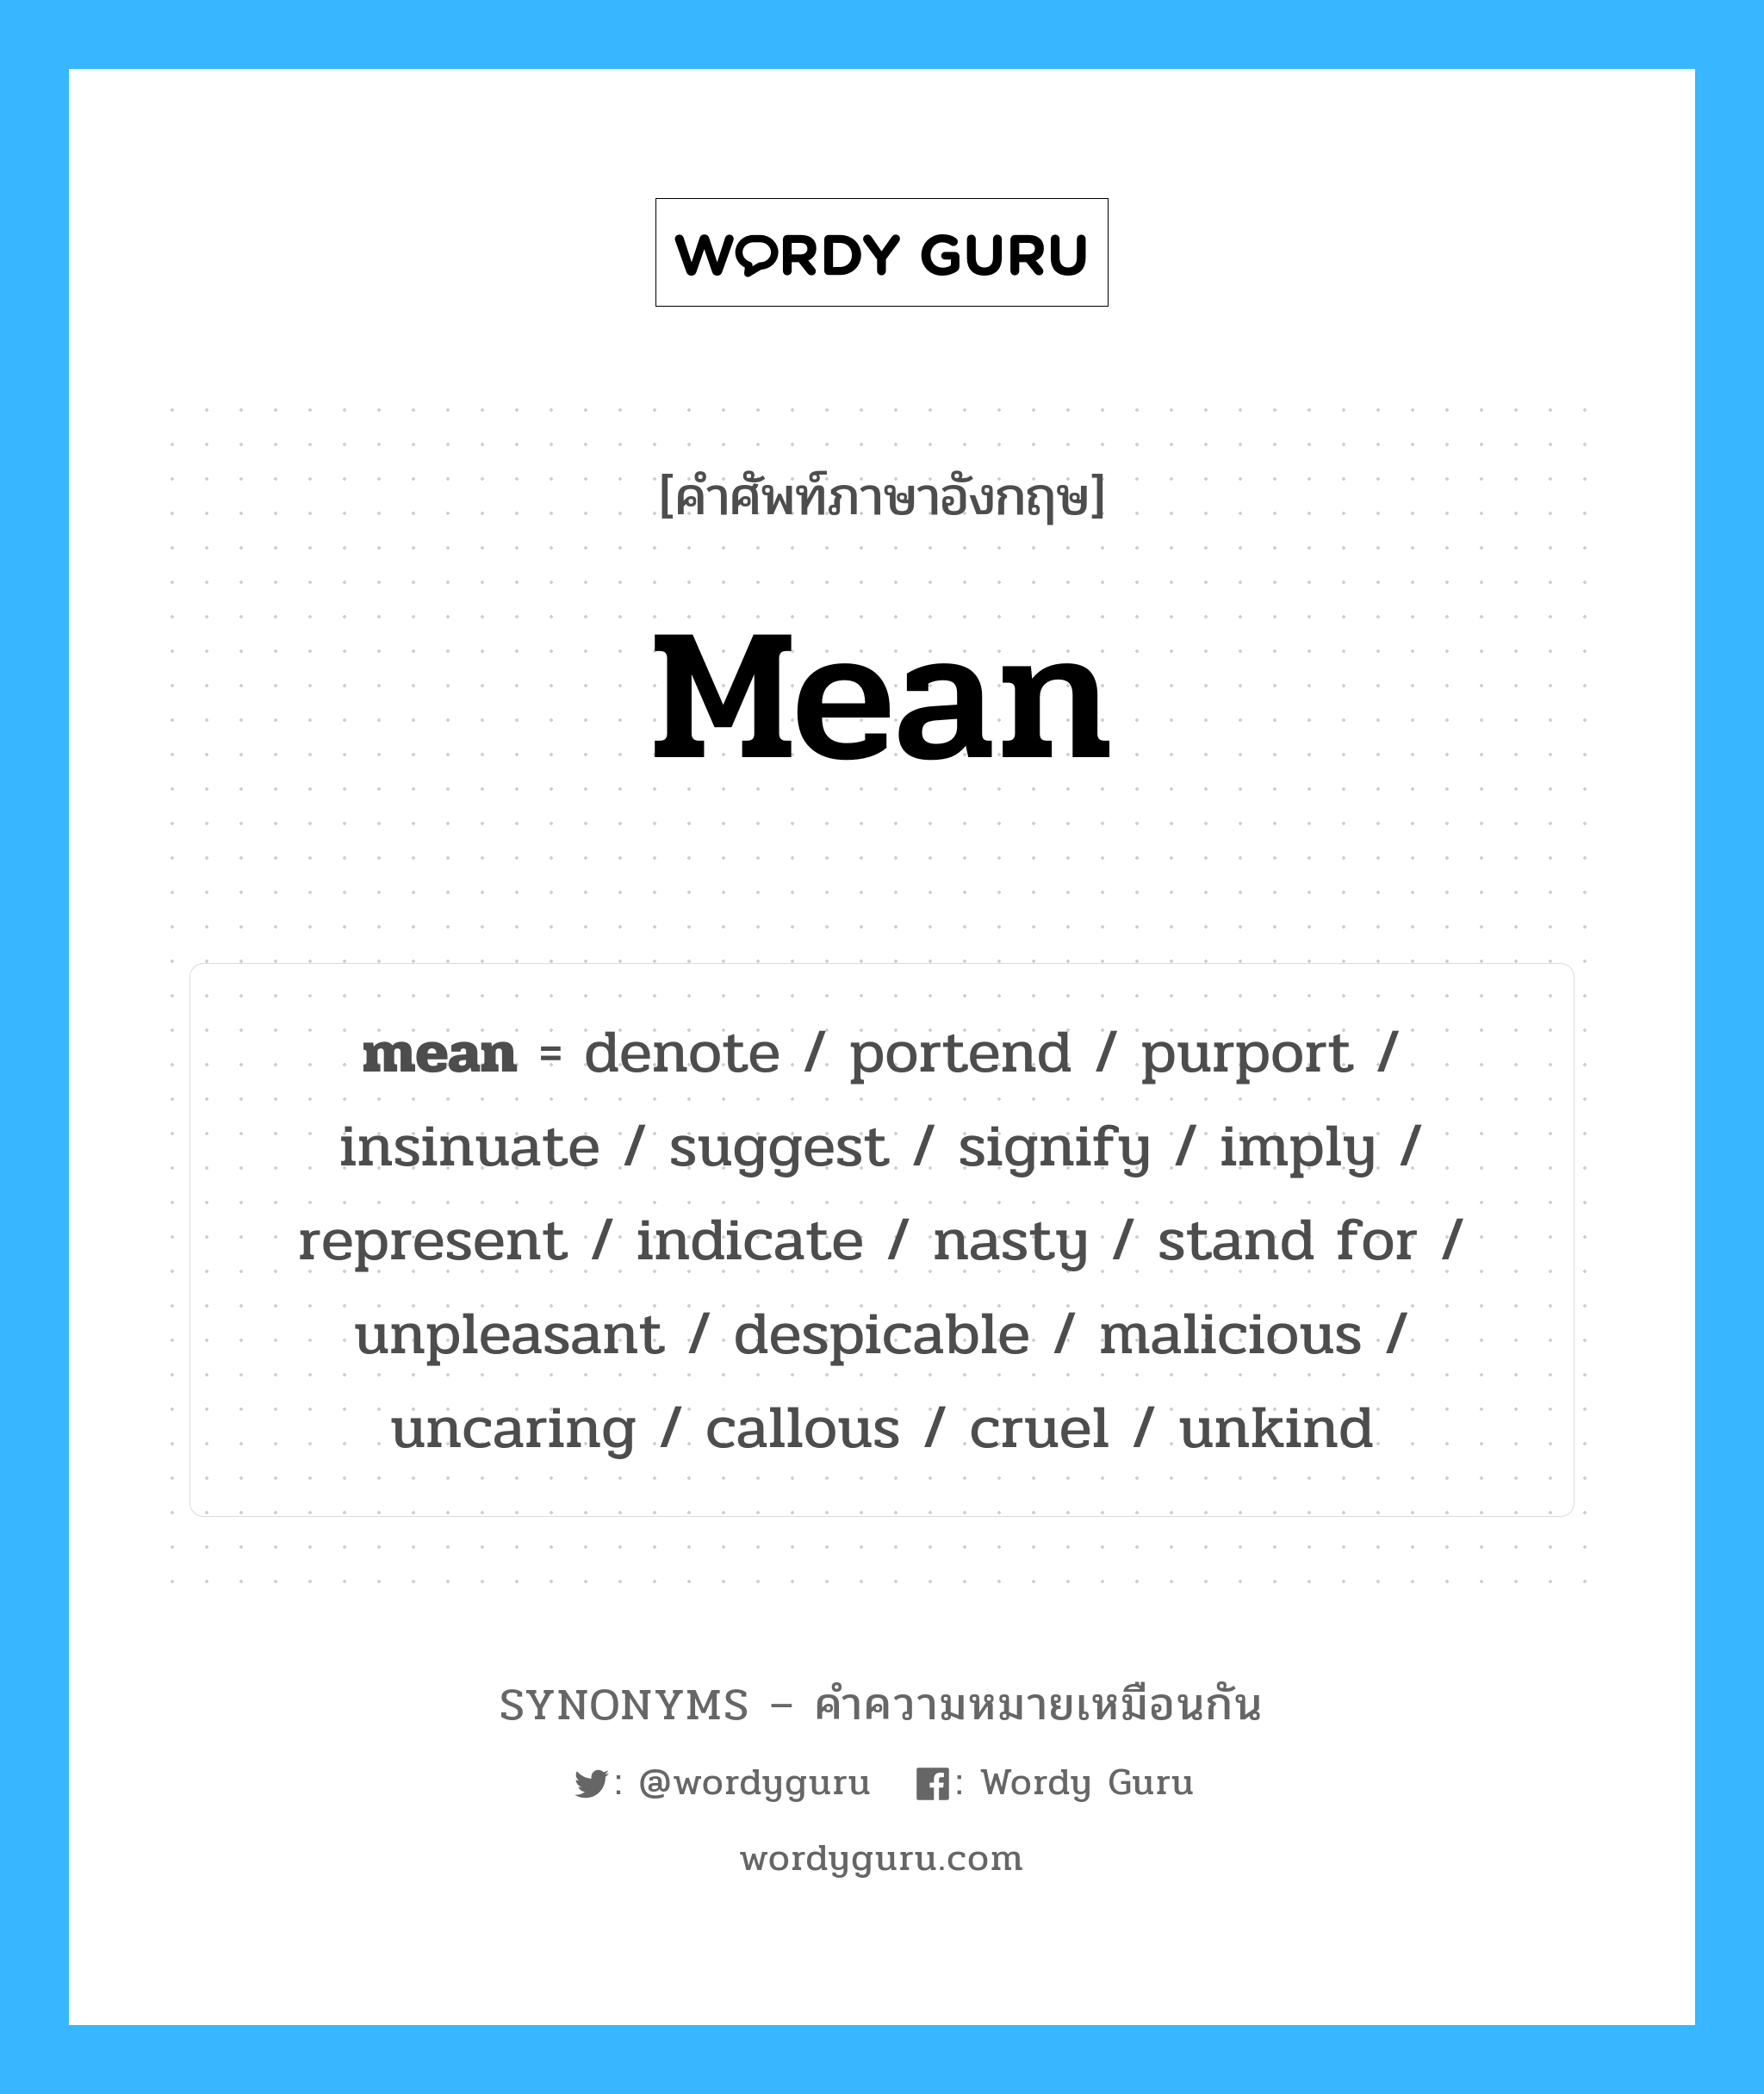 signify เป็นหนึ่งใน mean และมีคำอื่น ๆ อีกดังนี้, คำศัพท์ภาษาอังกฤษ signify ความหมายคล้ายกันกับ mean แปลว่า มีความหมาย หมวด mean